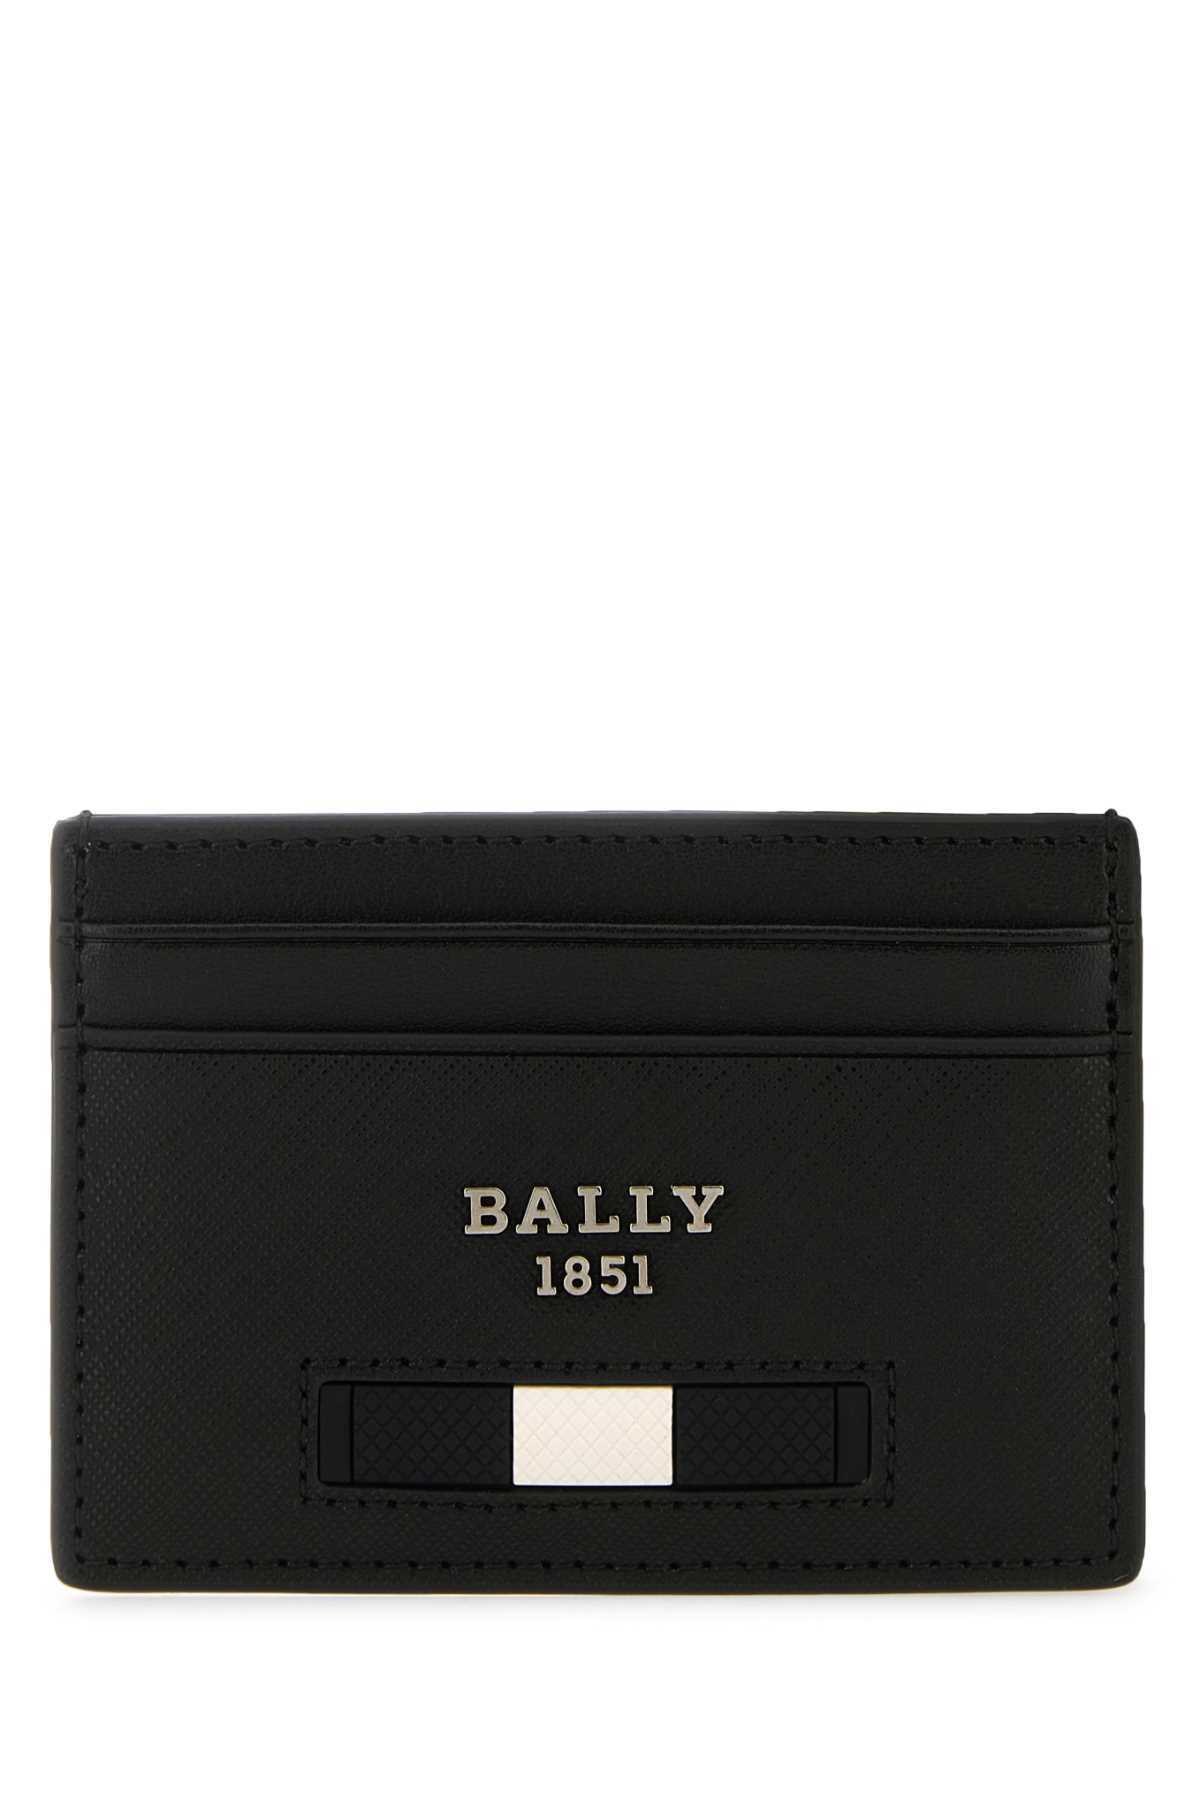 Shop Bally Black Leather Cardholder